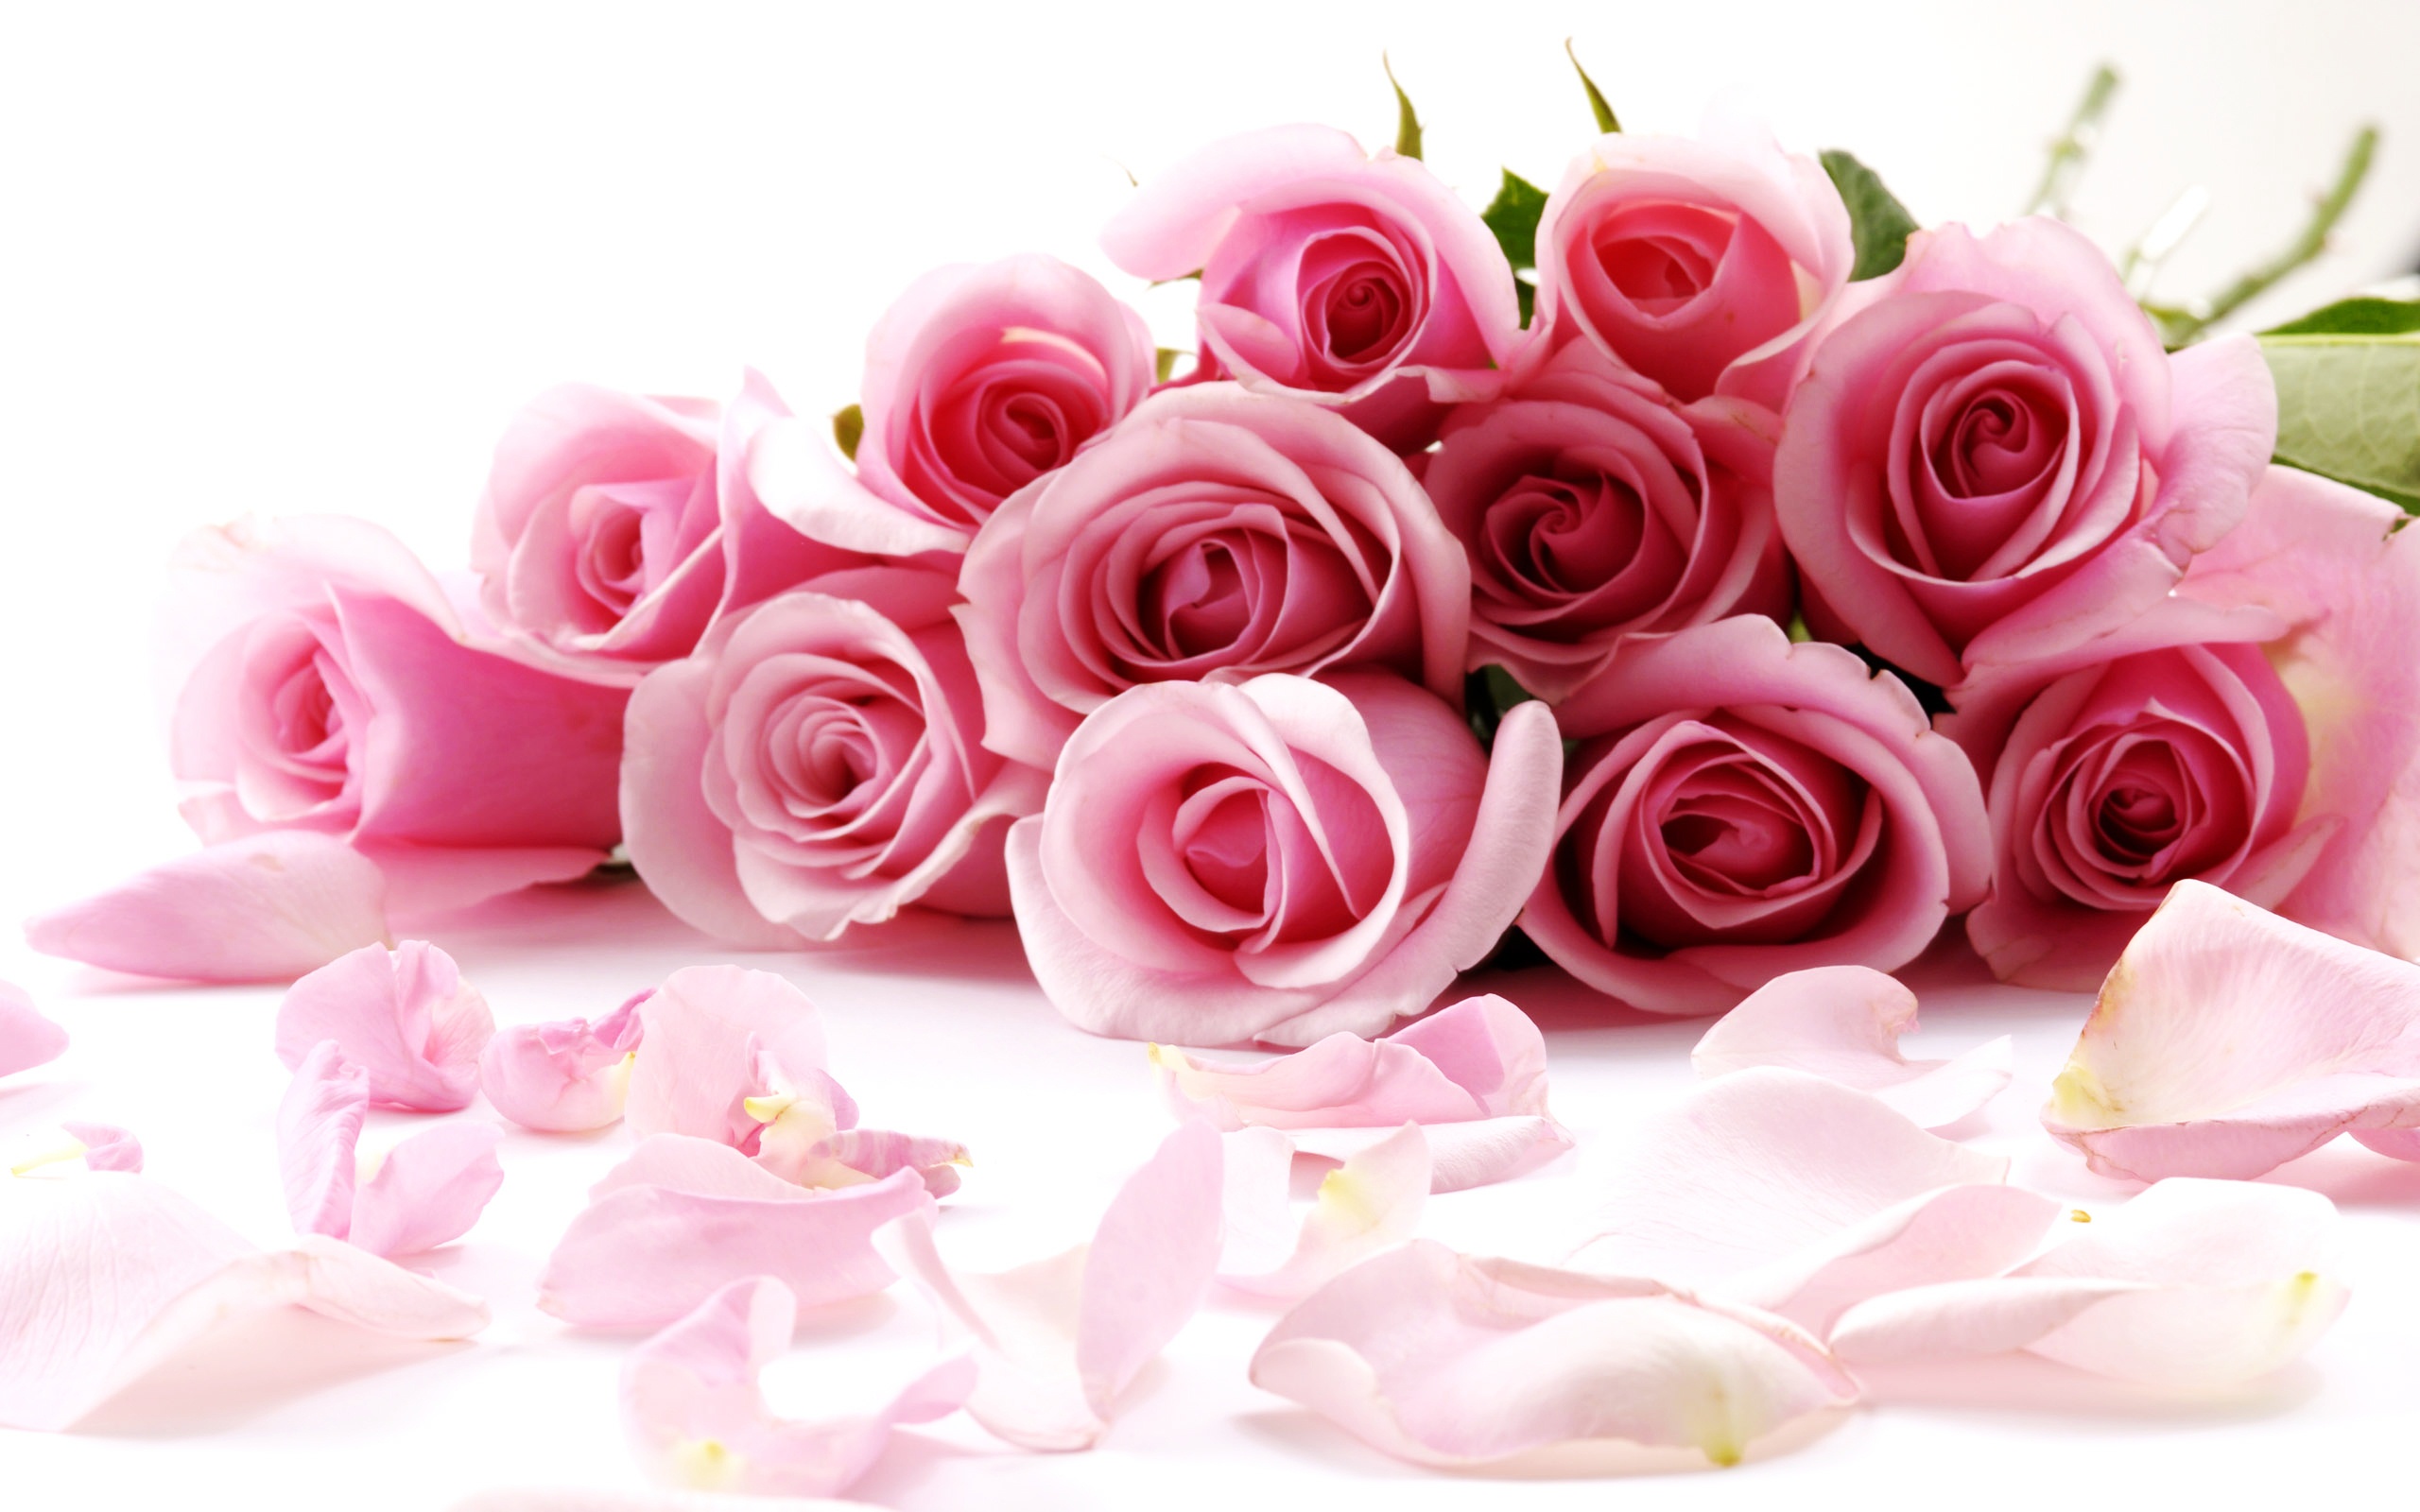 pink rose flower images Download